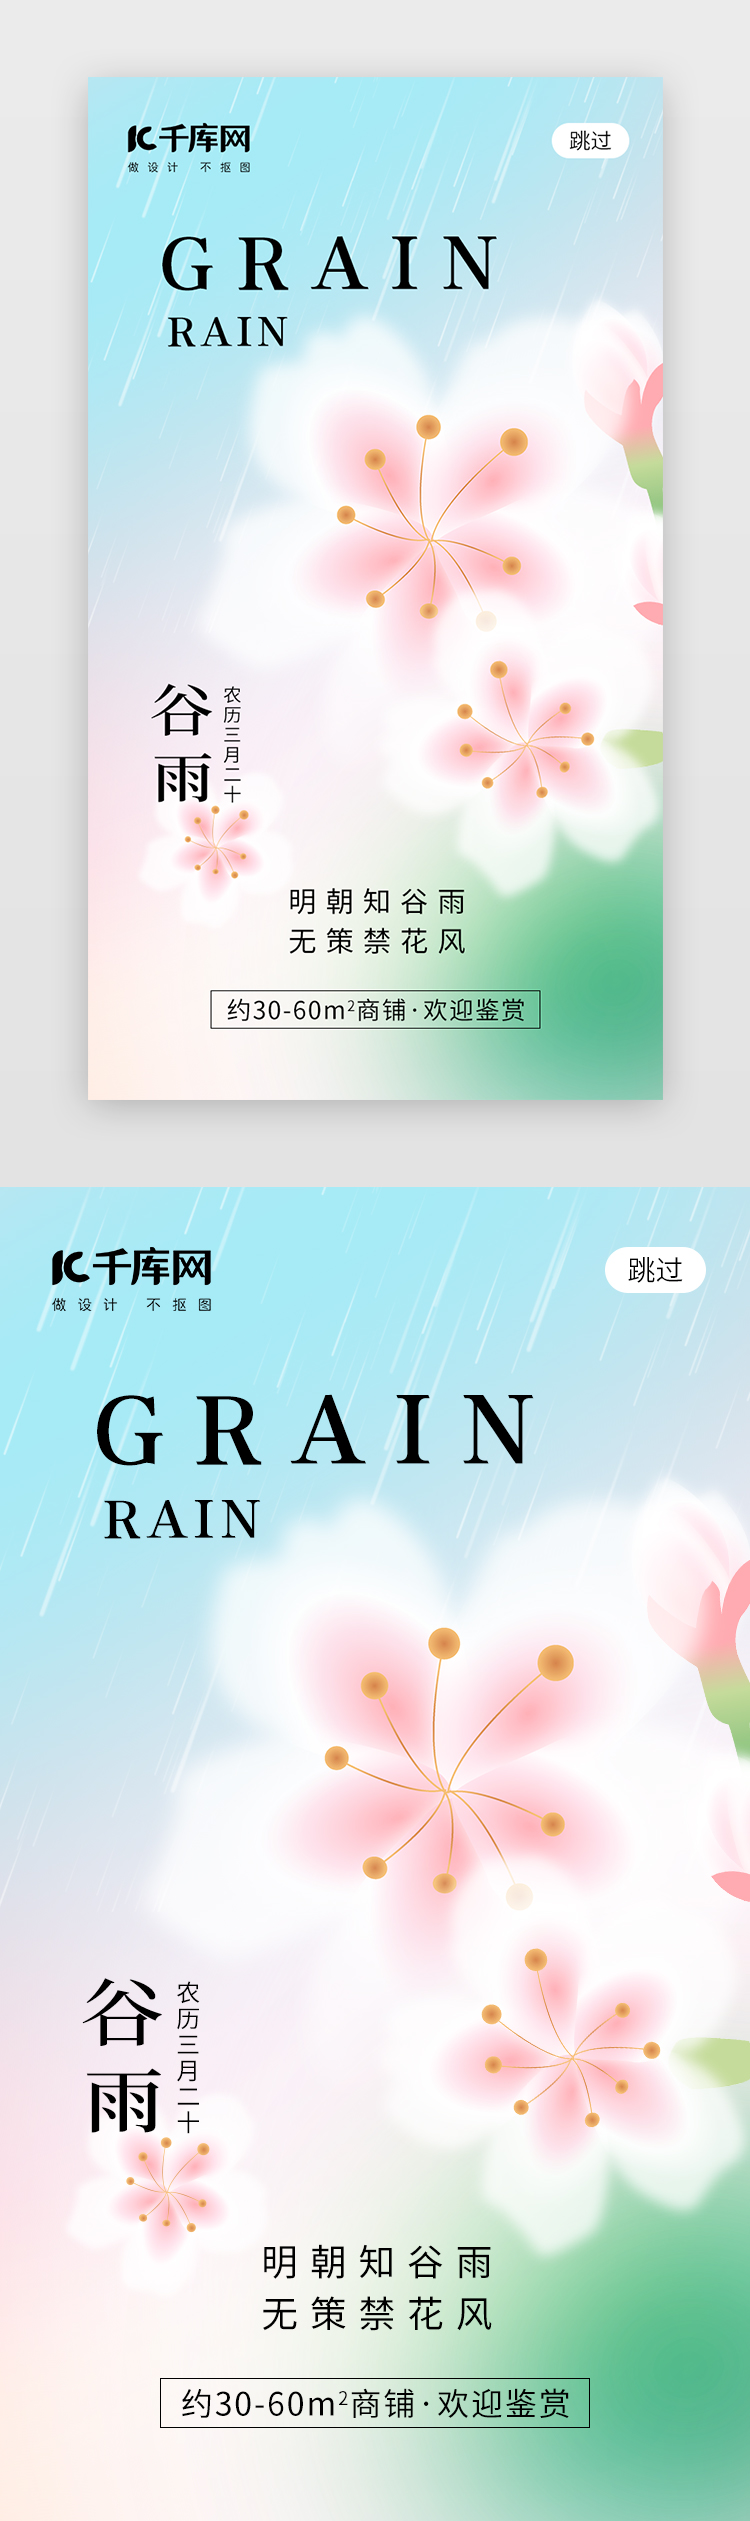 二十四节气谷雨app闪屏弥散桃粉色桃花图片